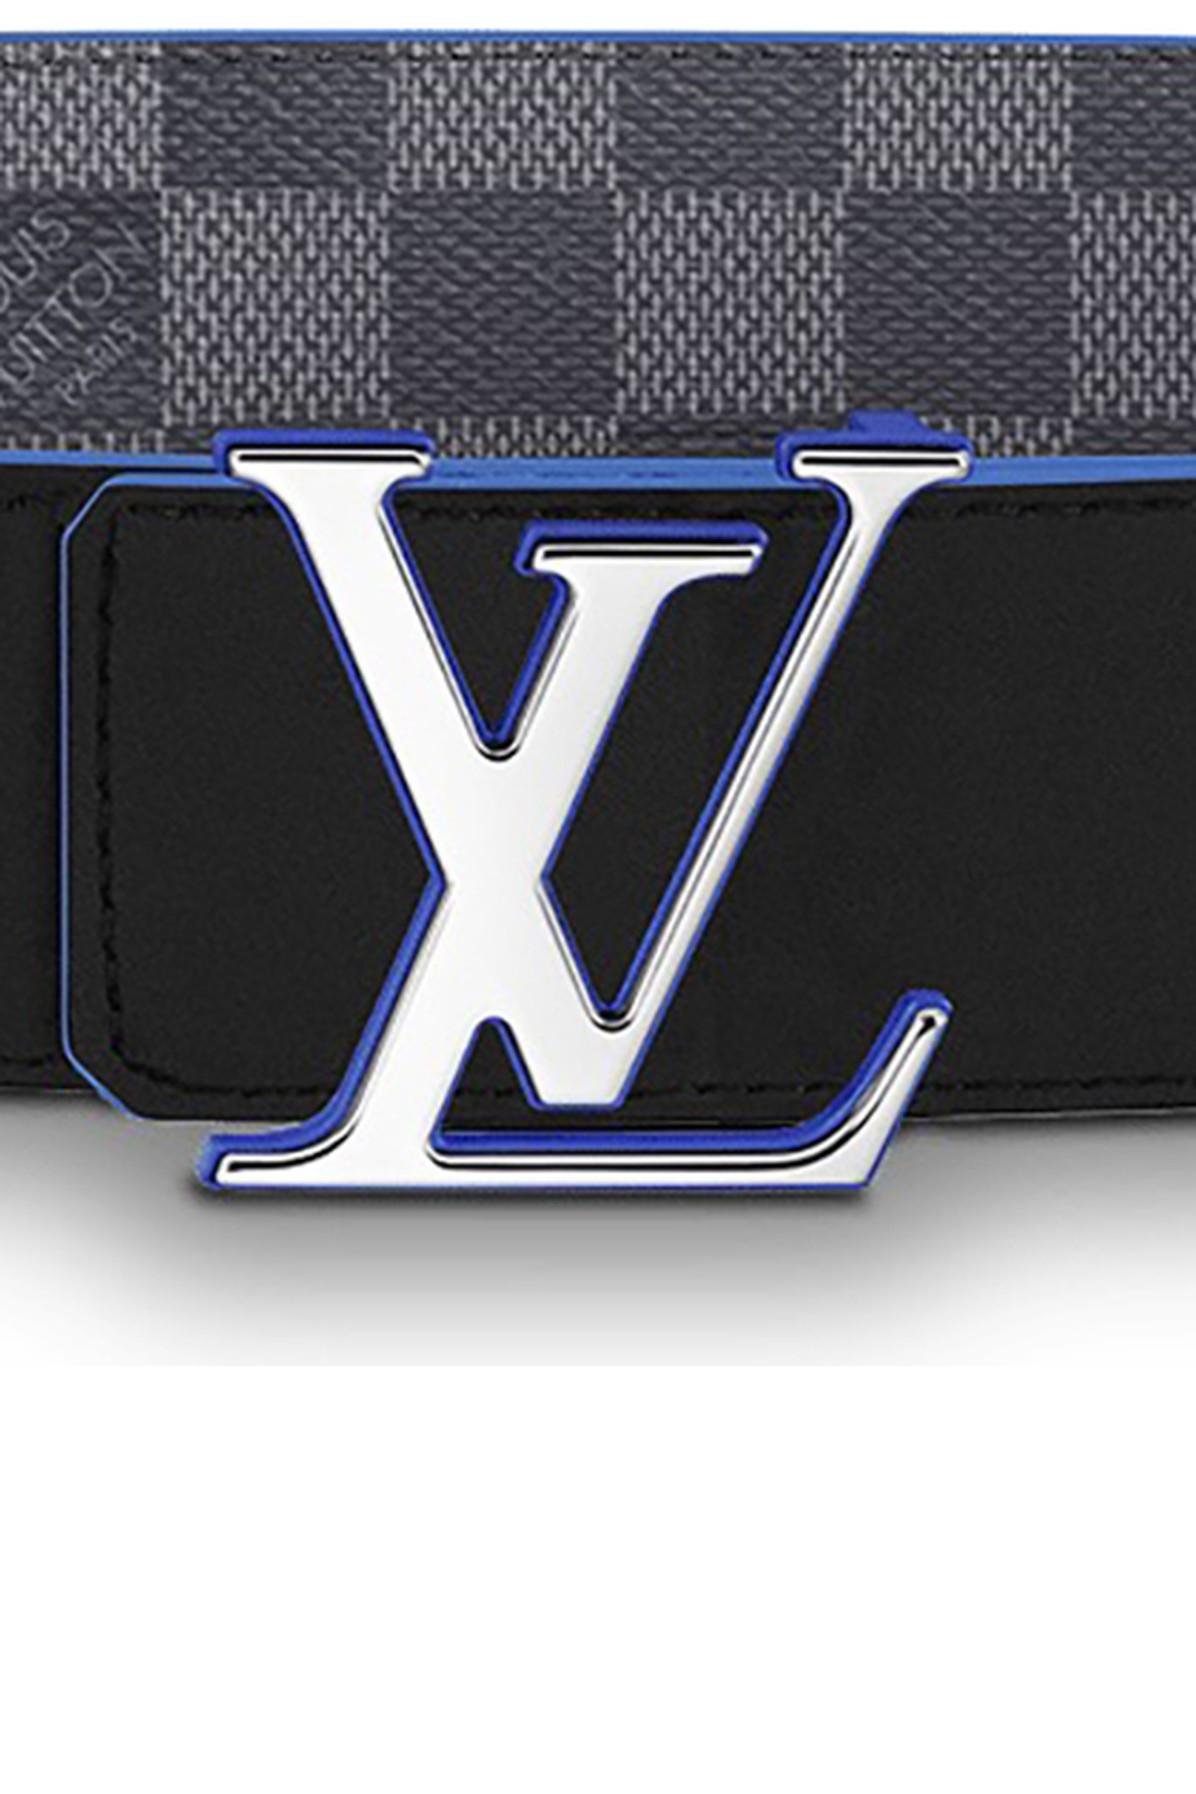 Belts Louis Vuitton LV Initiales Reversible Belt 40 mm